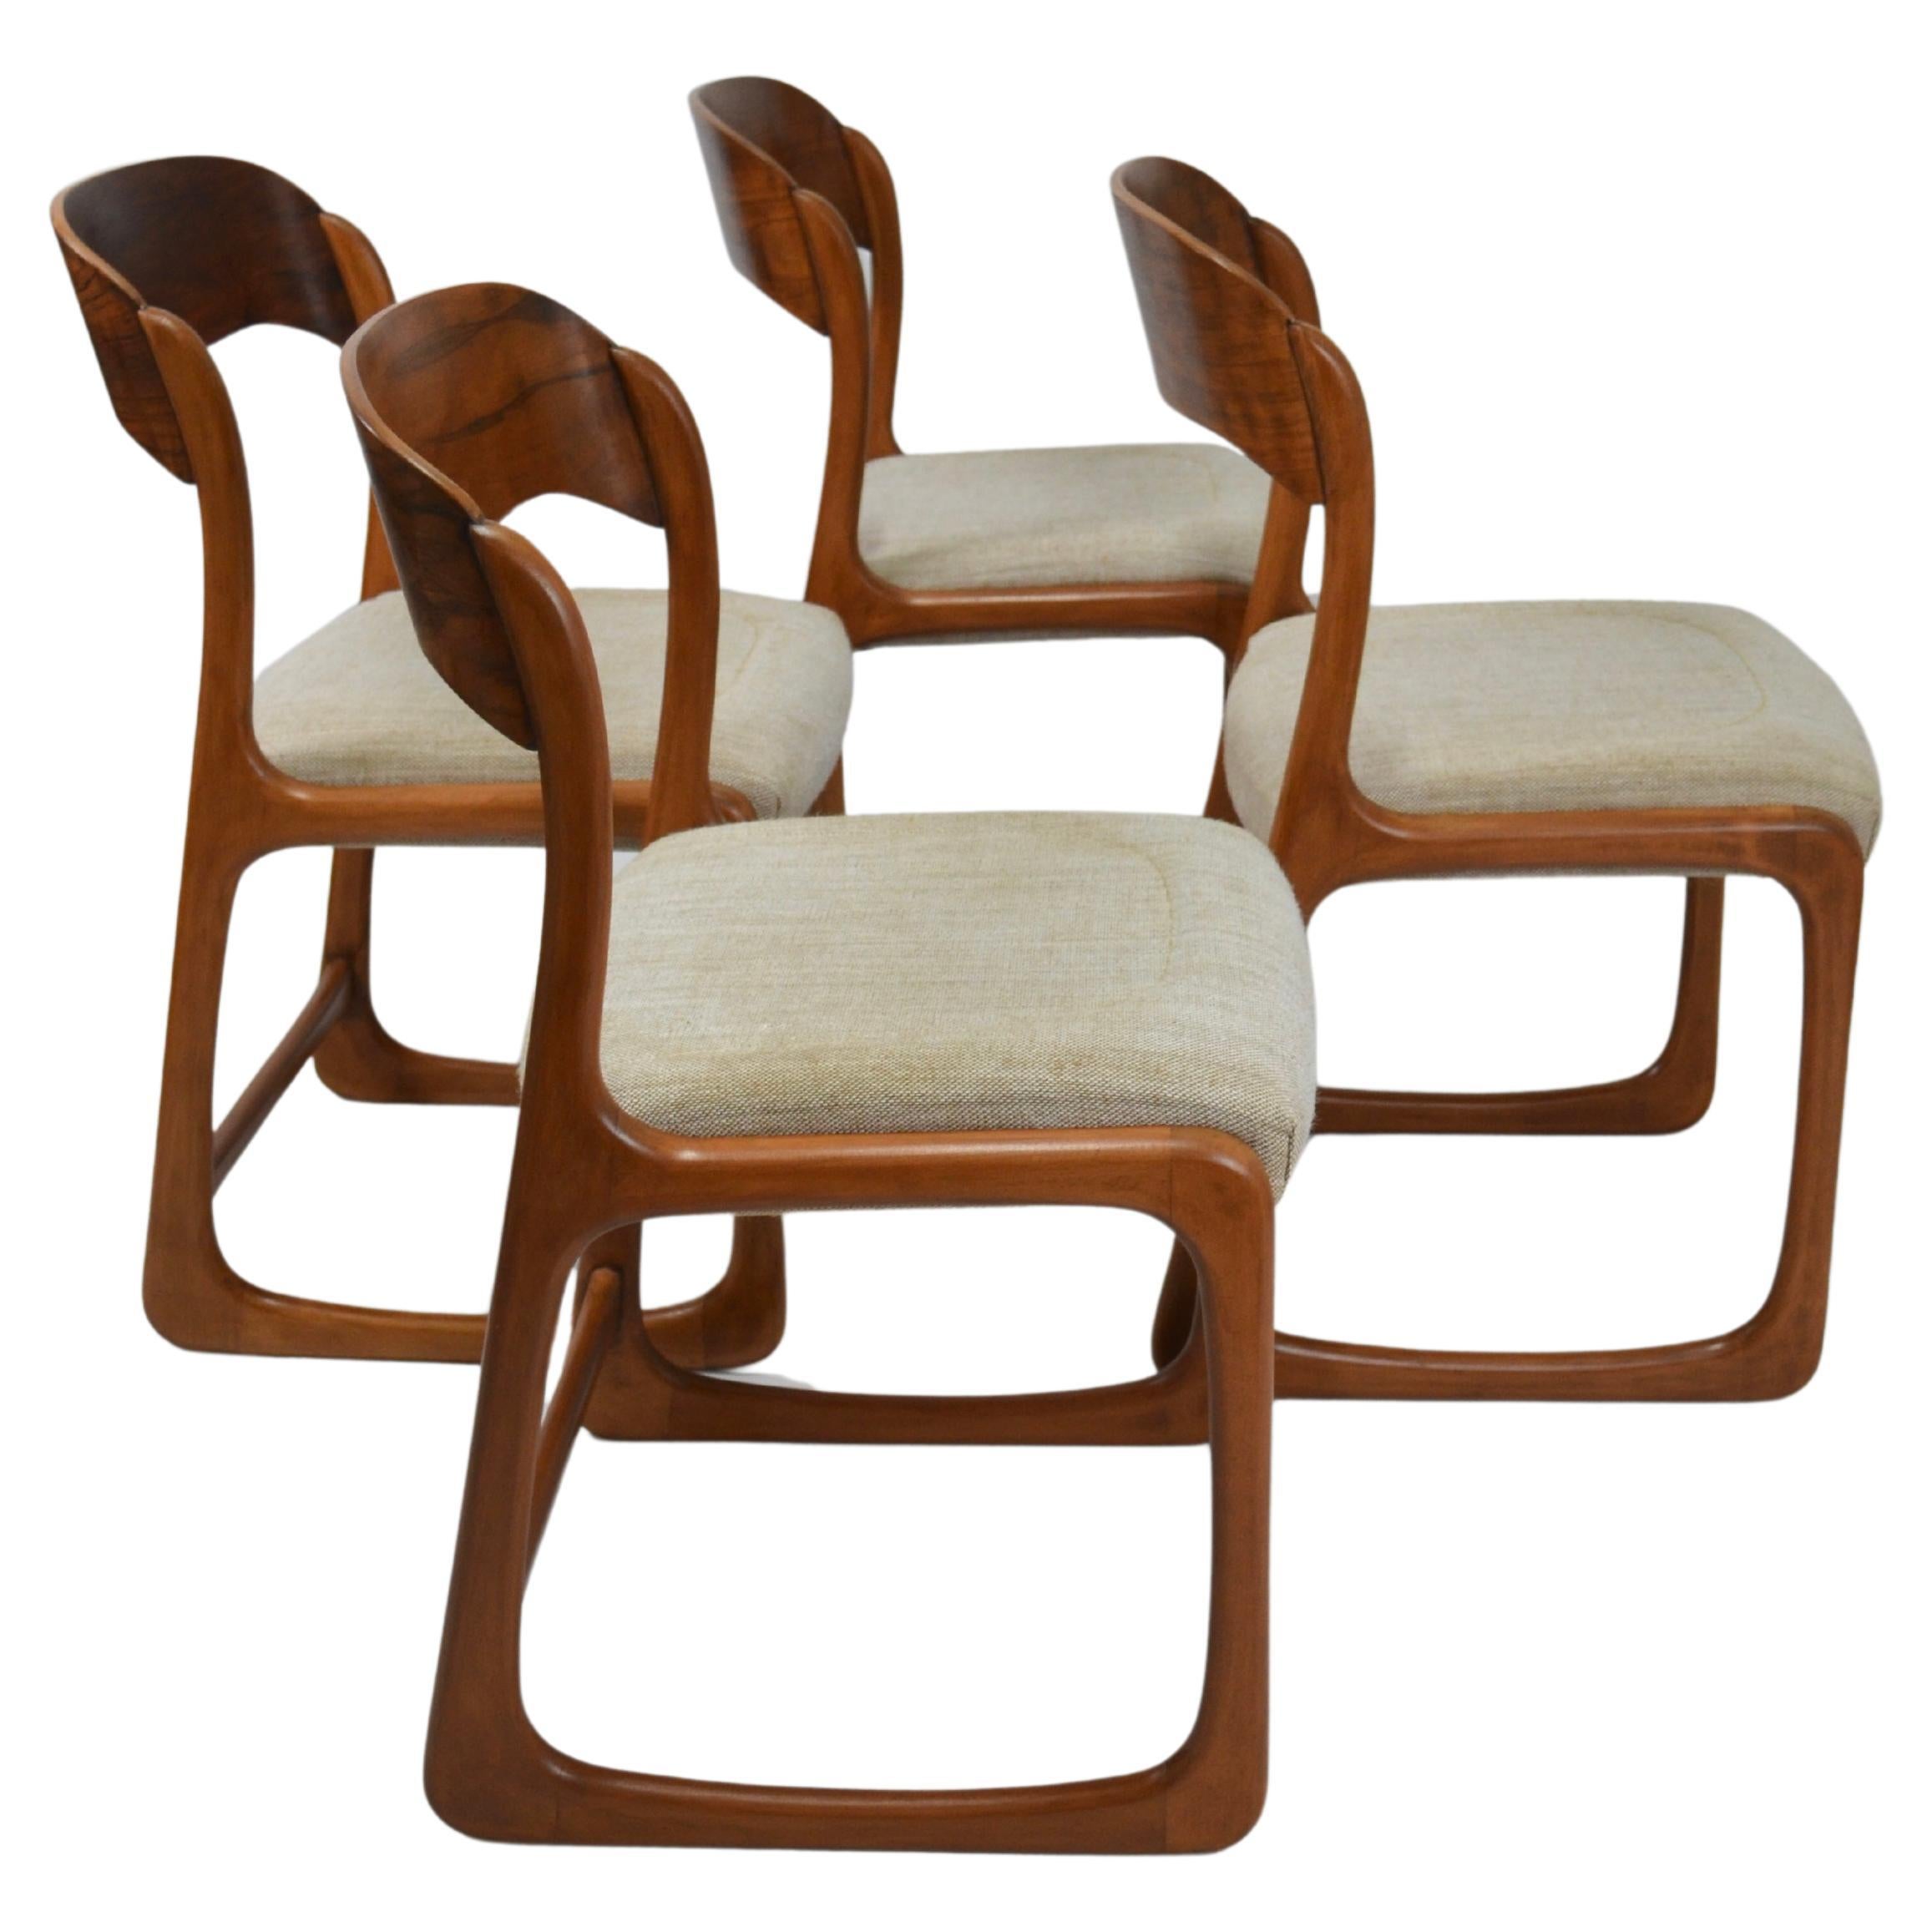 Baumann France Chairs